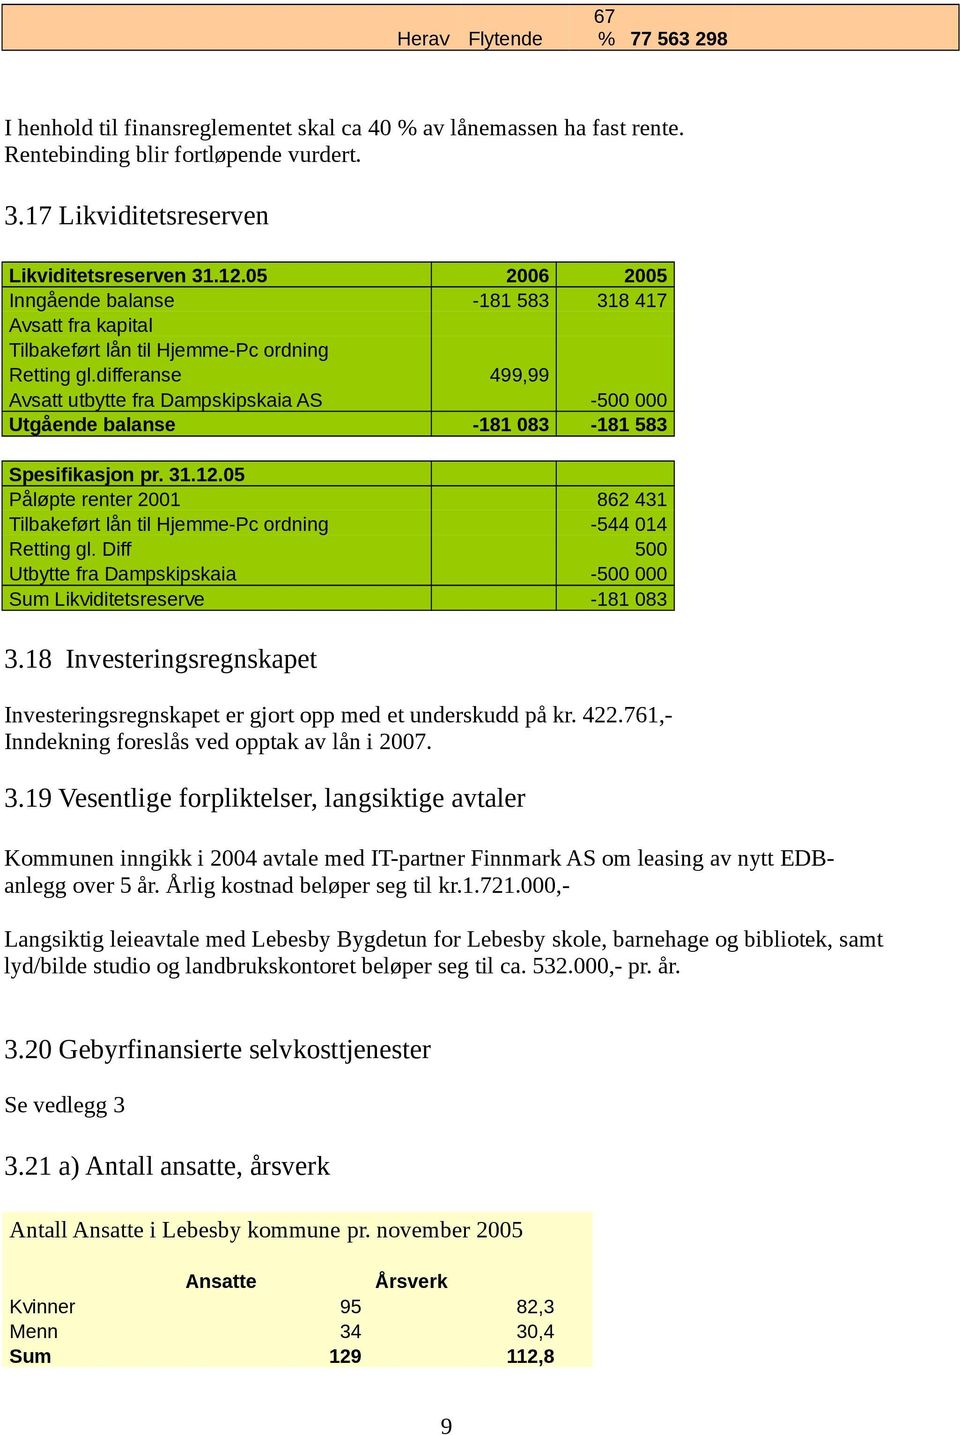 5 Påløpte renter 21 Tilbakeført lån til Hjemme-Pc ordning Retting gl. Diff Utbytte fra Dampskipskaia Sum Likviditetsreserve -5-181 583 862 431-544 14 5-5 -181 83 3.